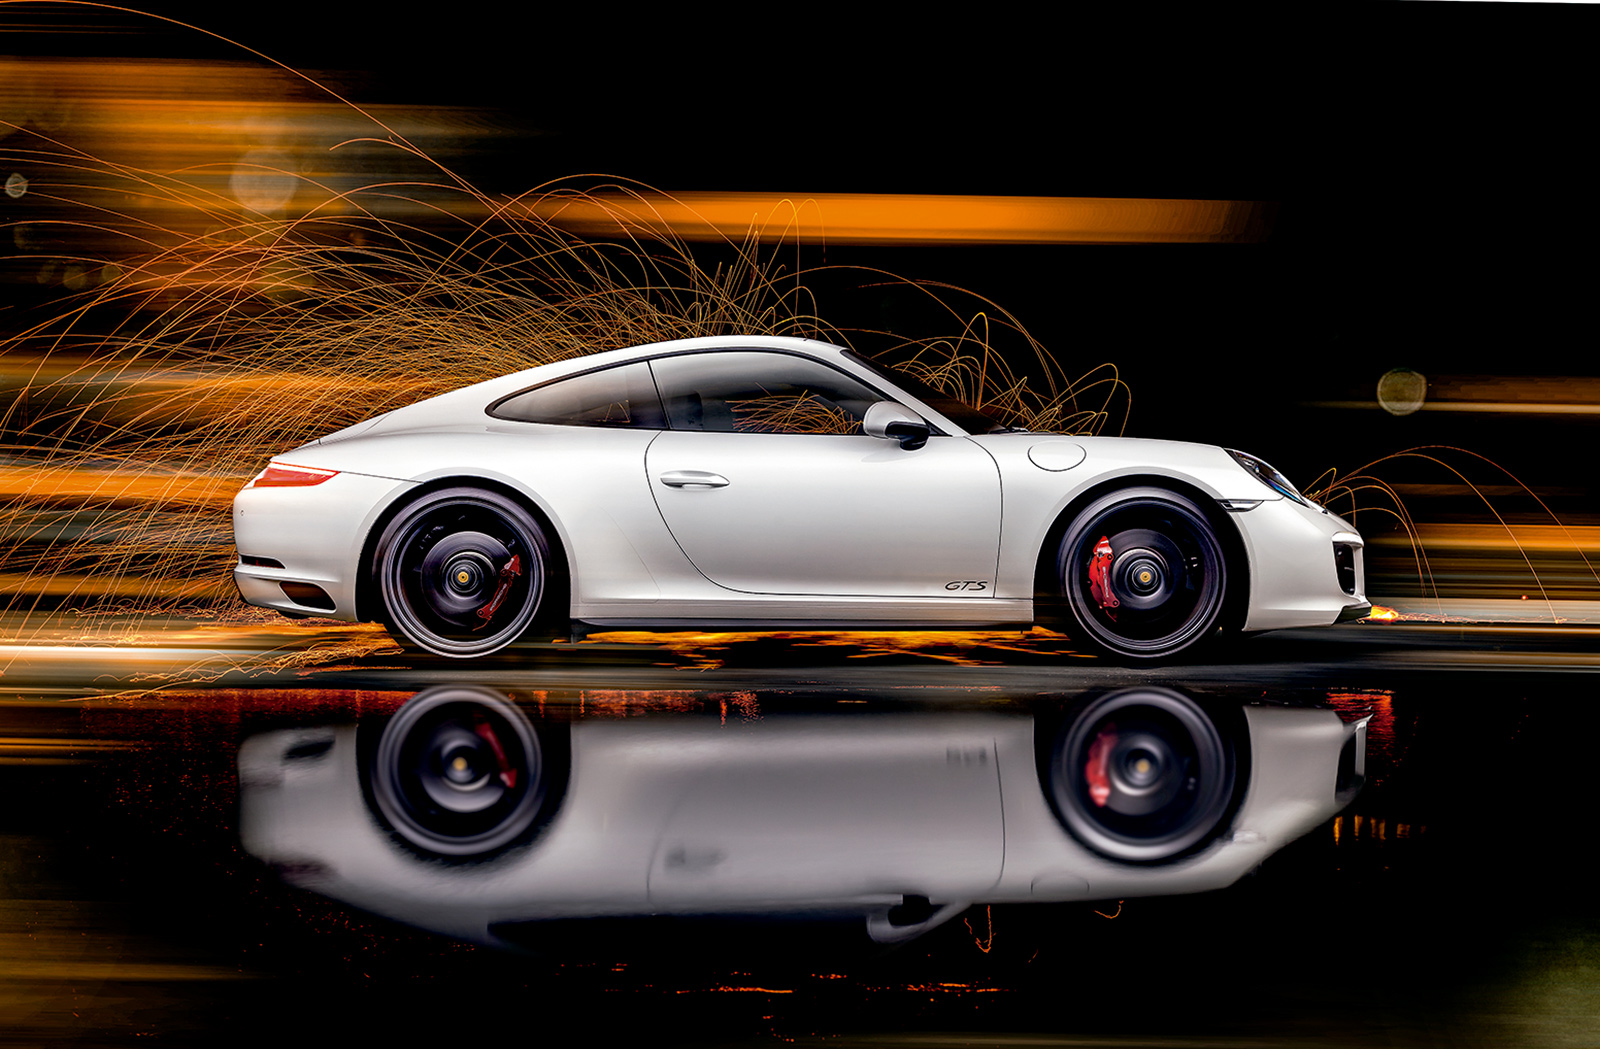  911 GTS skal bruge 3,6 sekunder til at gå fra 0 til 100 km/t